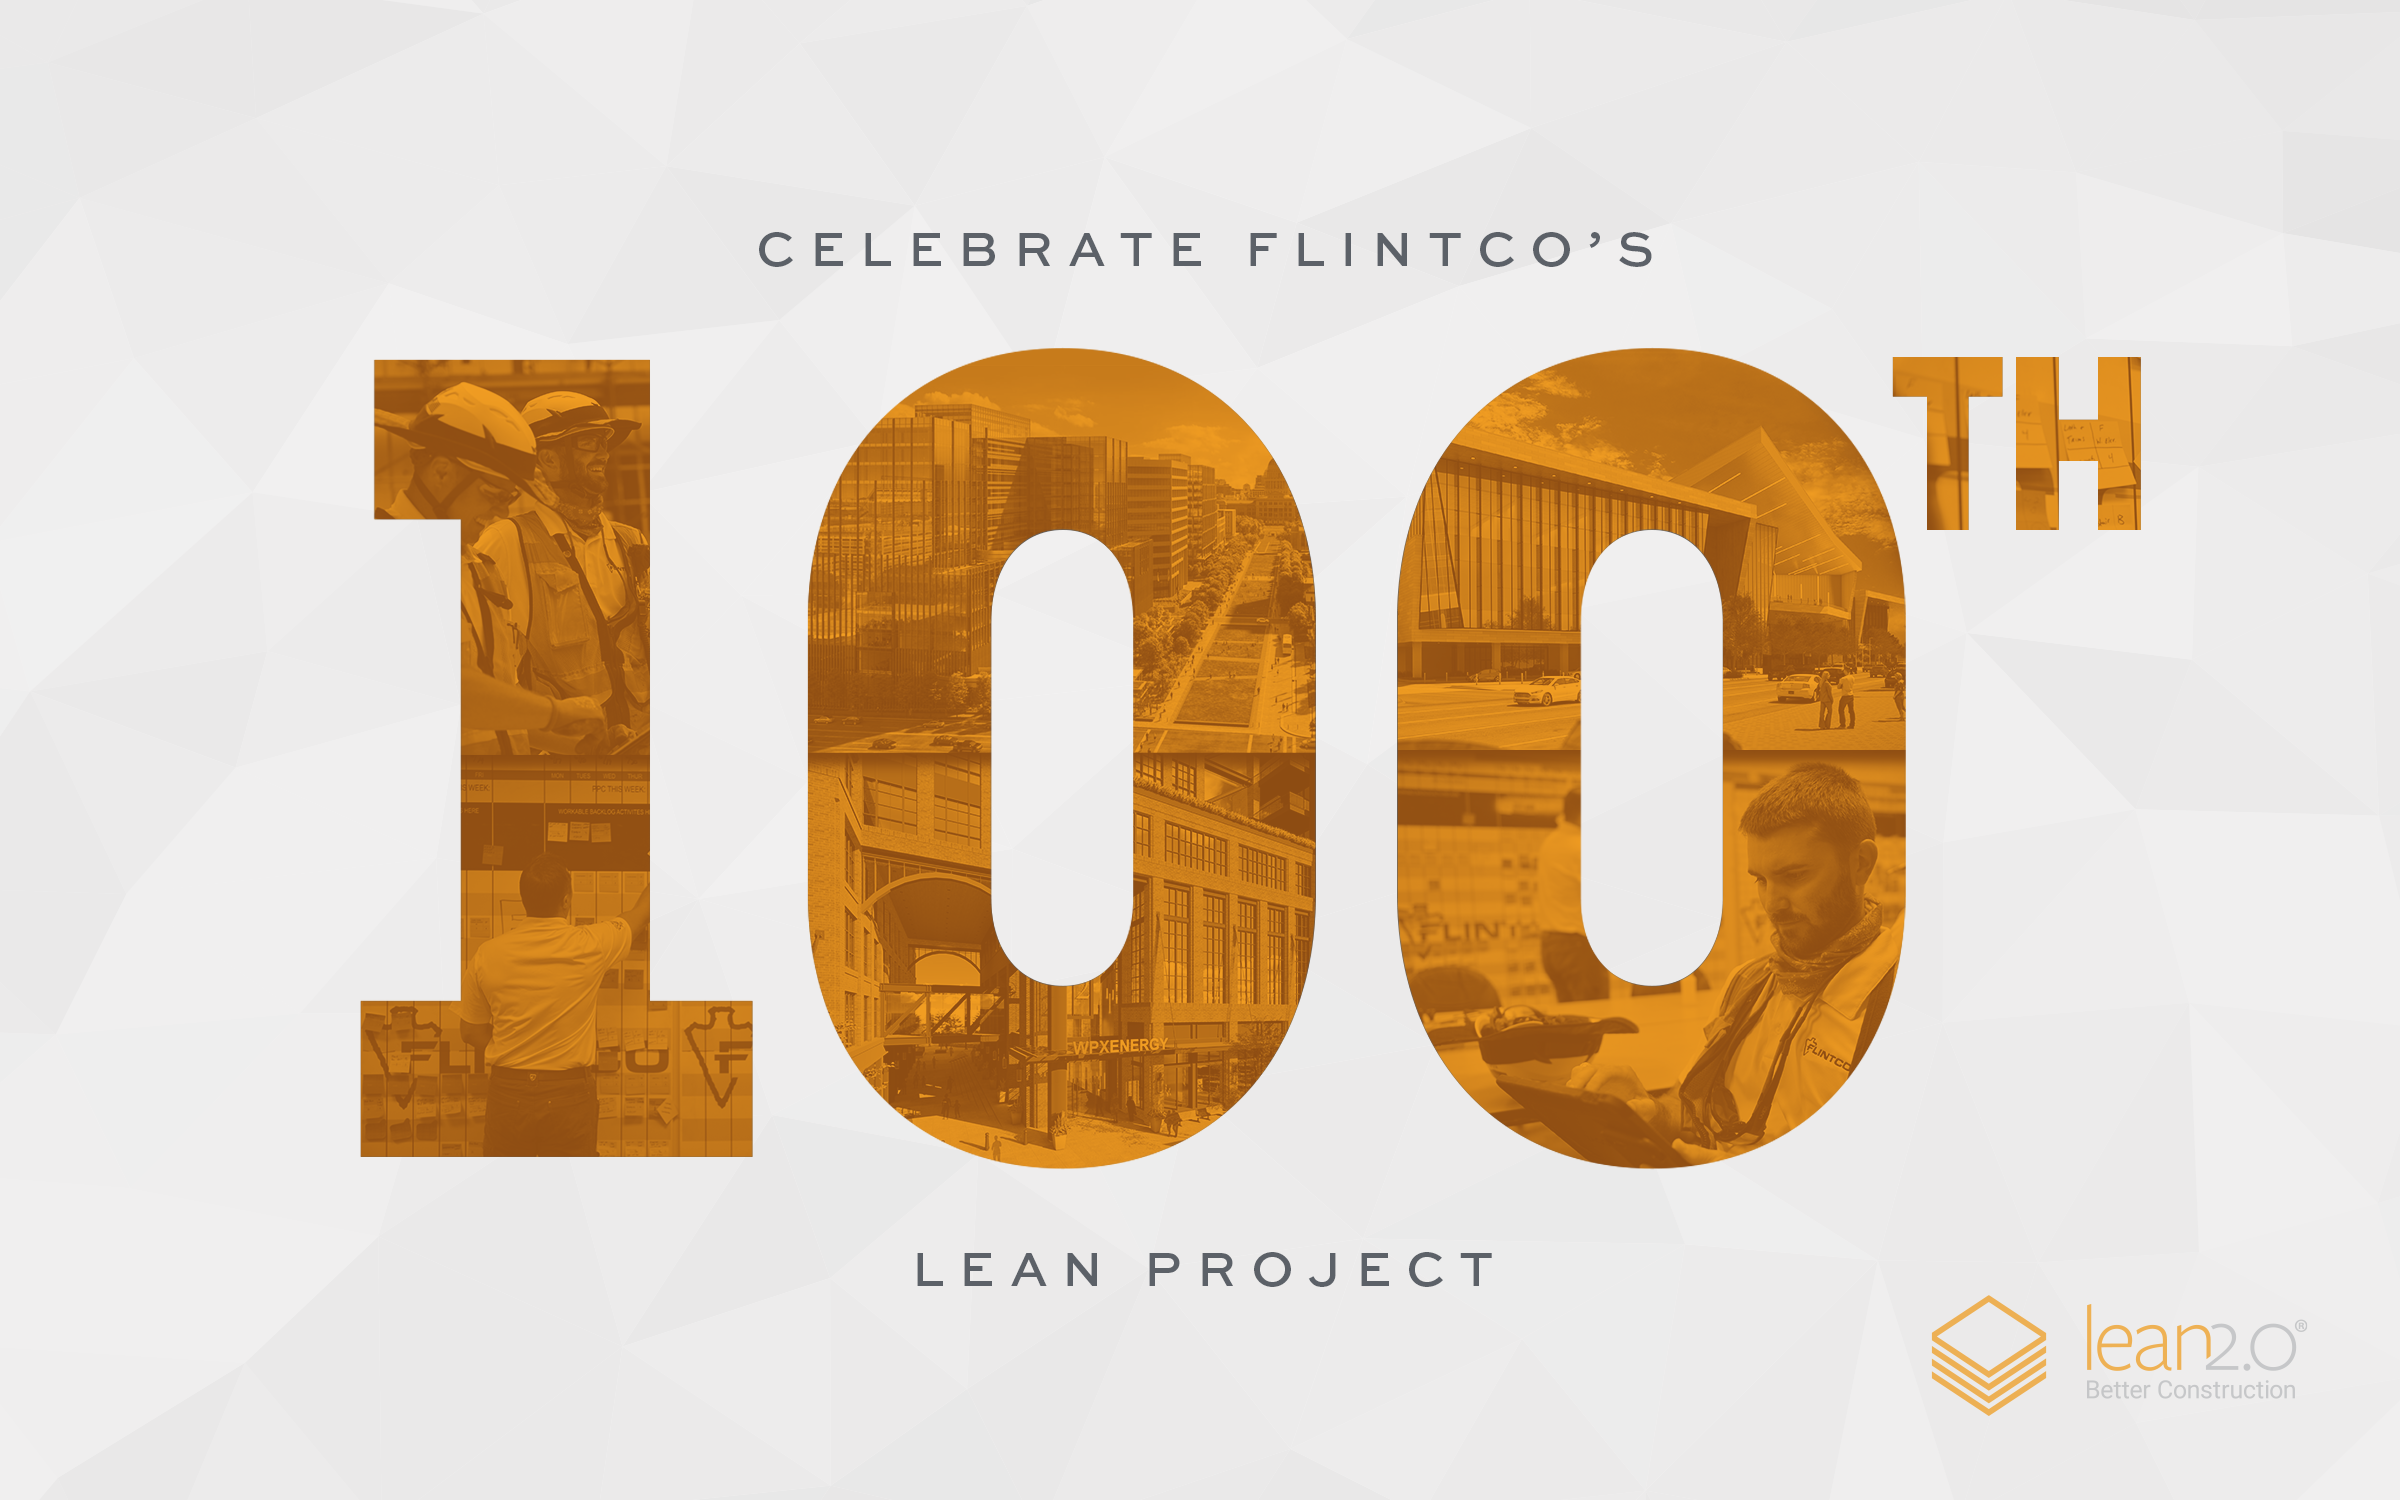 Flintco celebra el 100º proyecto Lean2.0